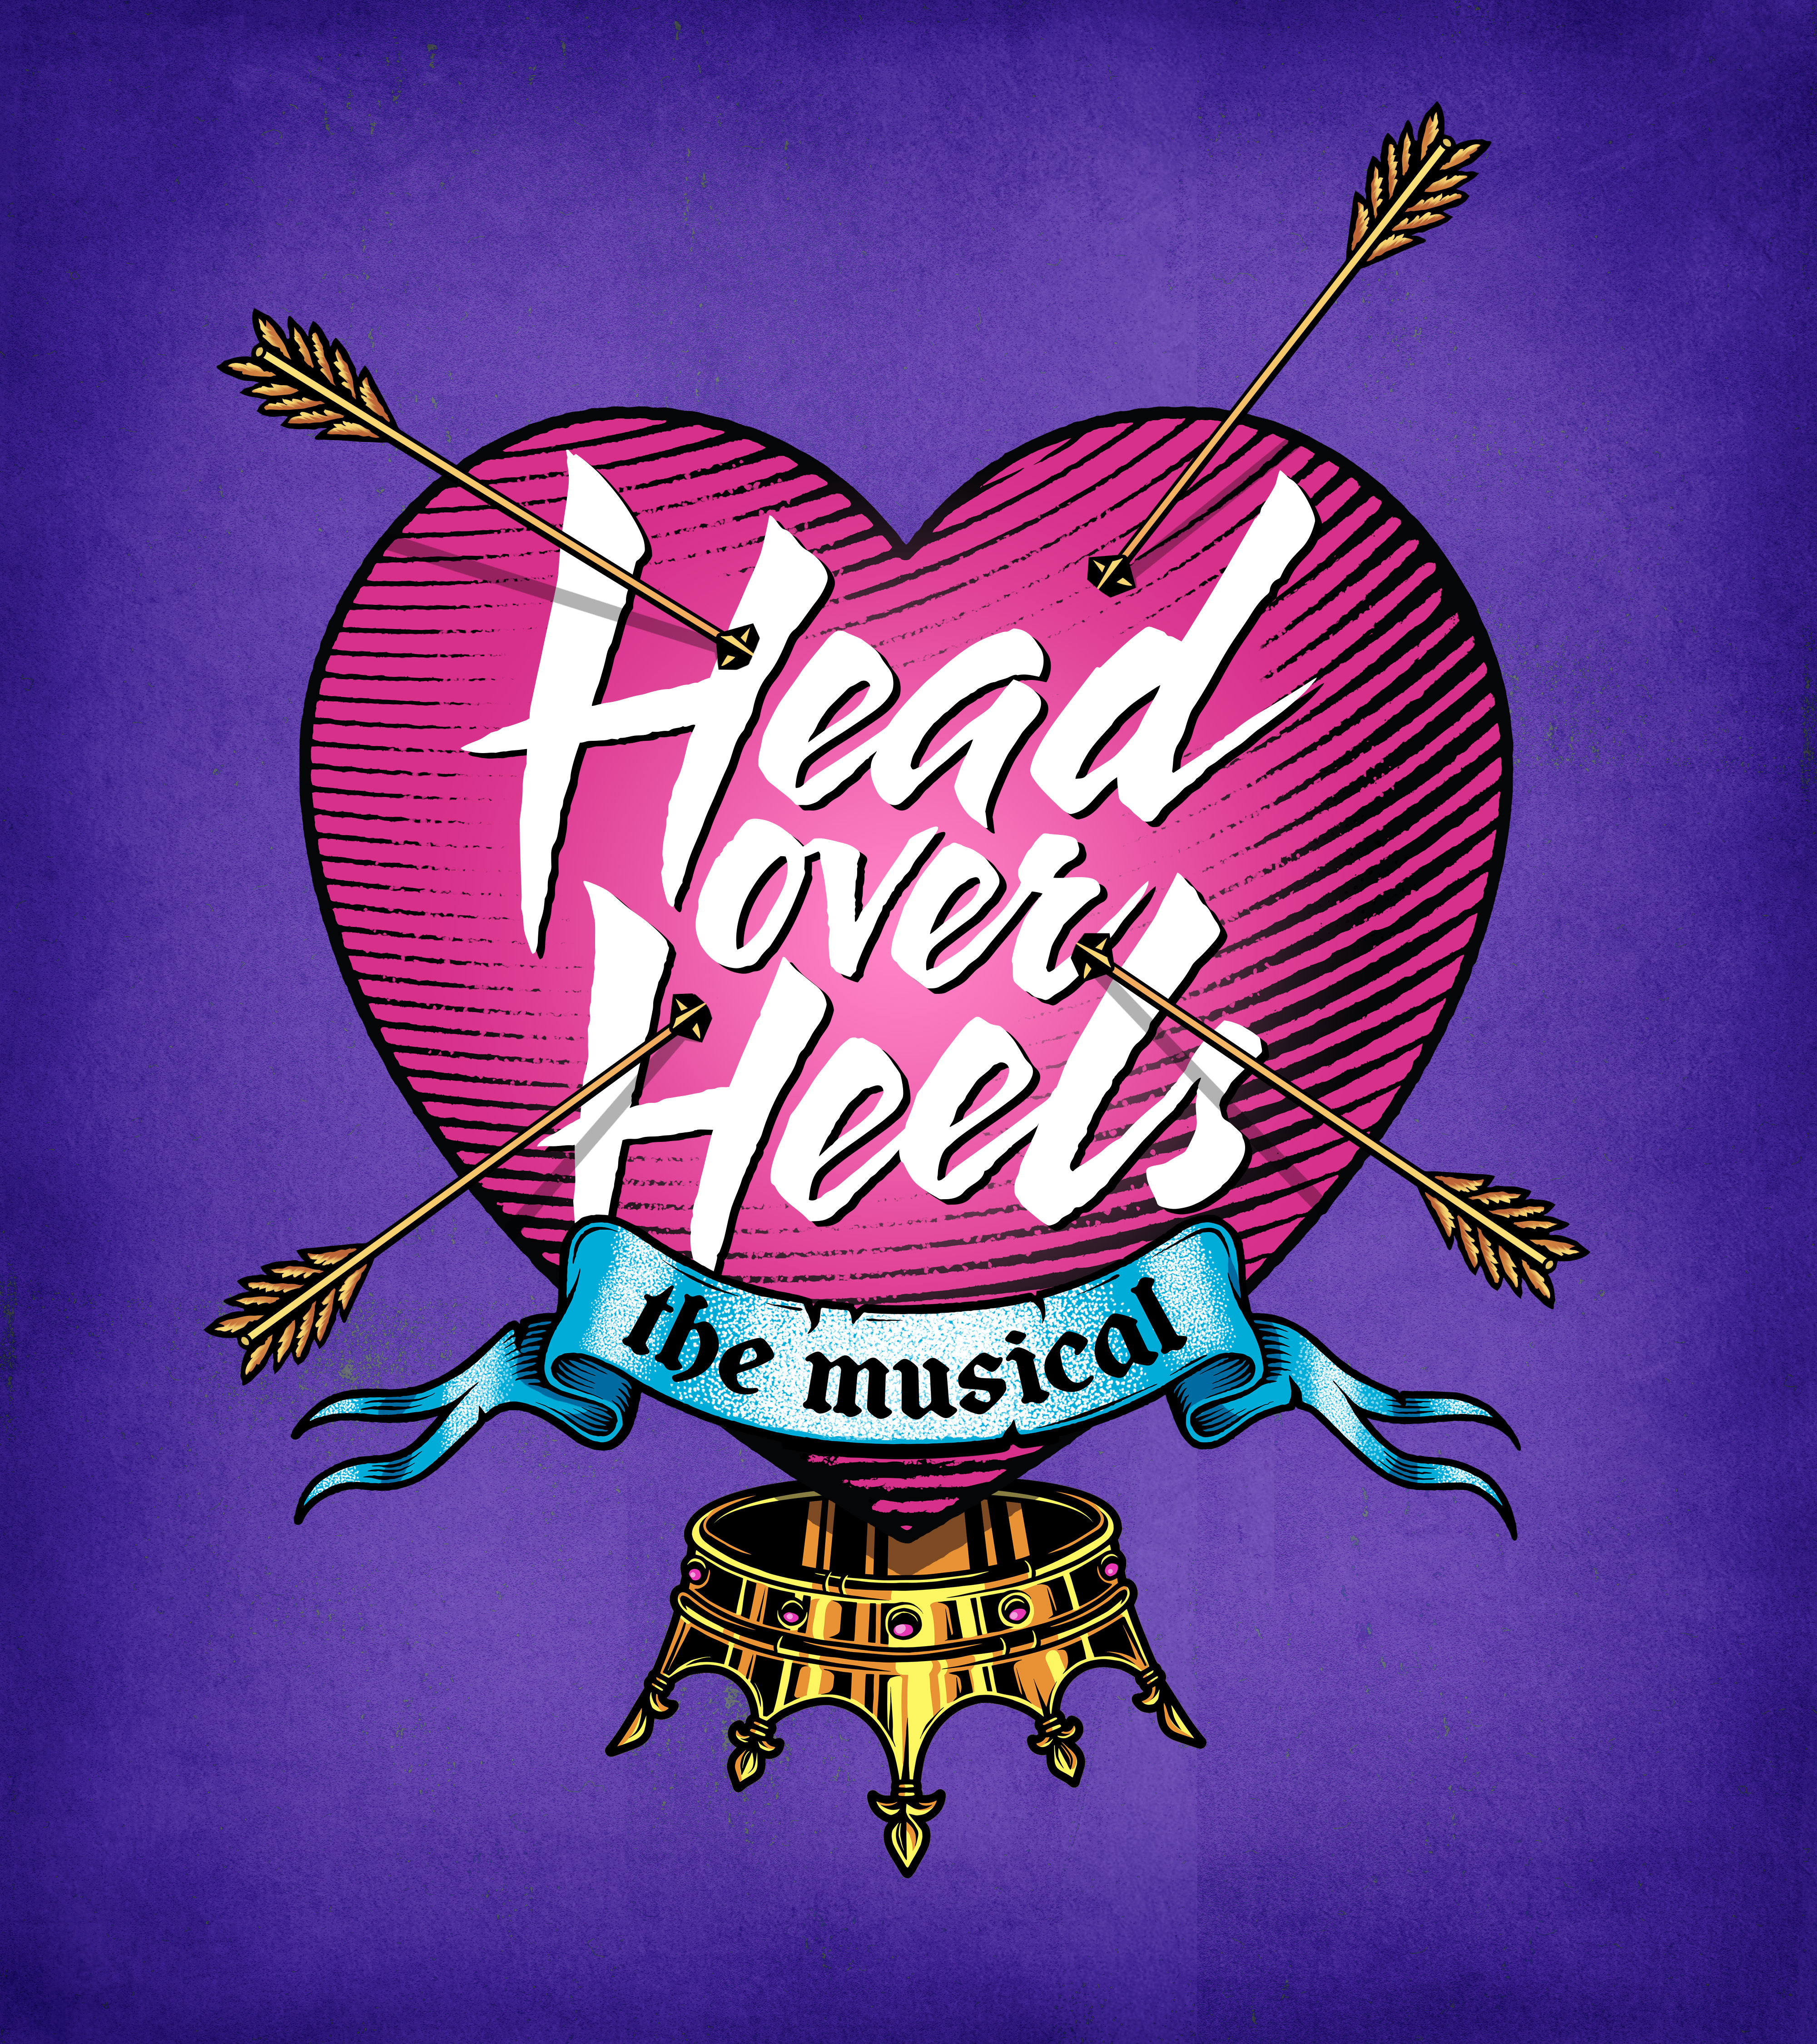 Head Over Heels - Theatre Horizon